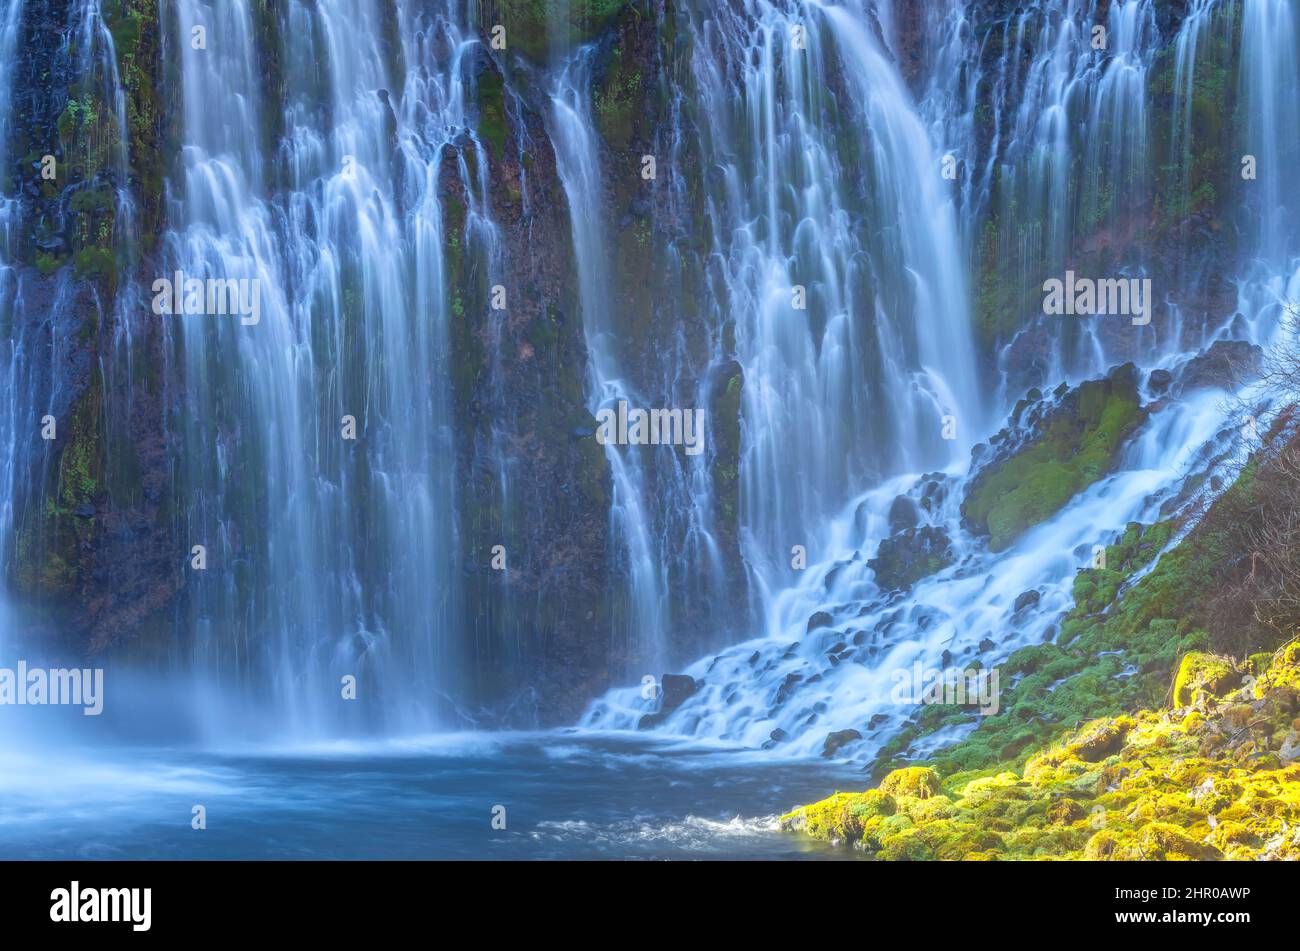 Burney Falls, McArthur-Burney Falls Memorial State Park, California, USA, at close up. Stock Photo